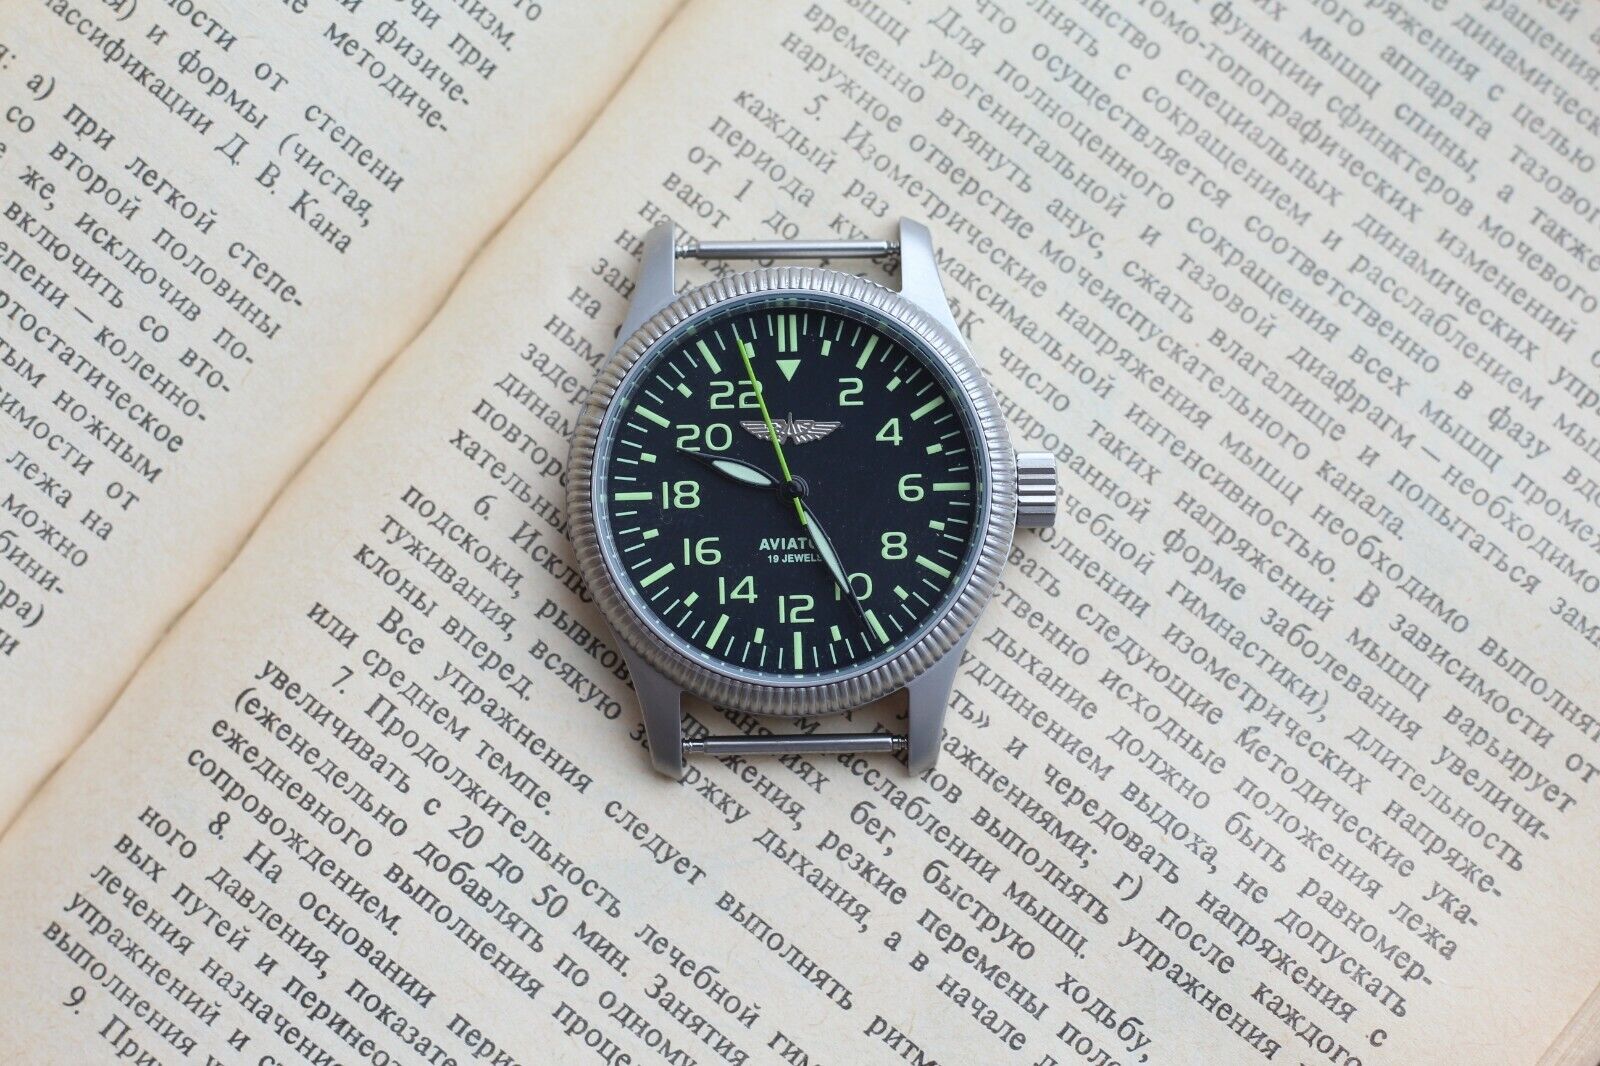 Wrist Watch RAKETA 24-hour Soviet watch Russian Mechanical 2623 caliber